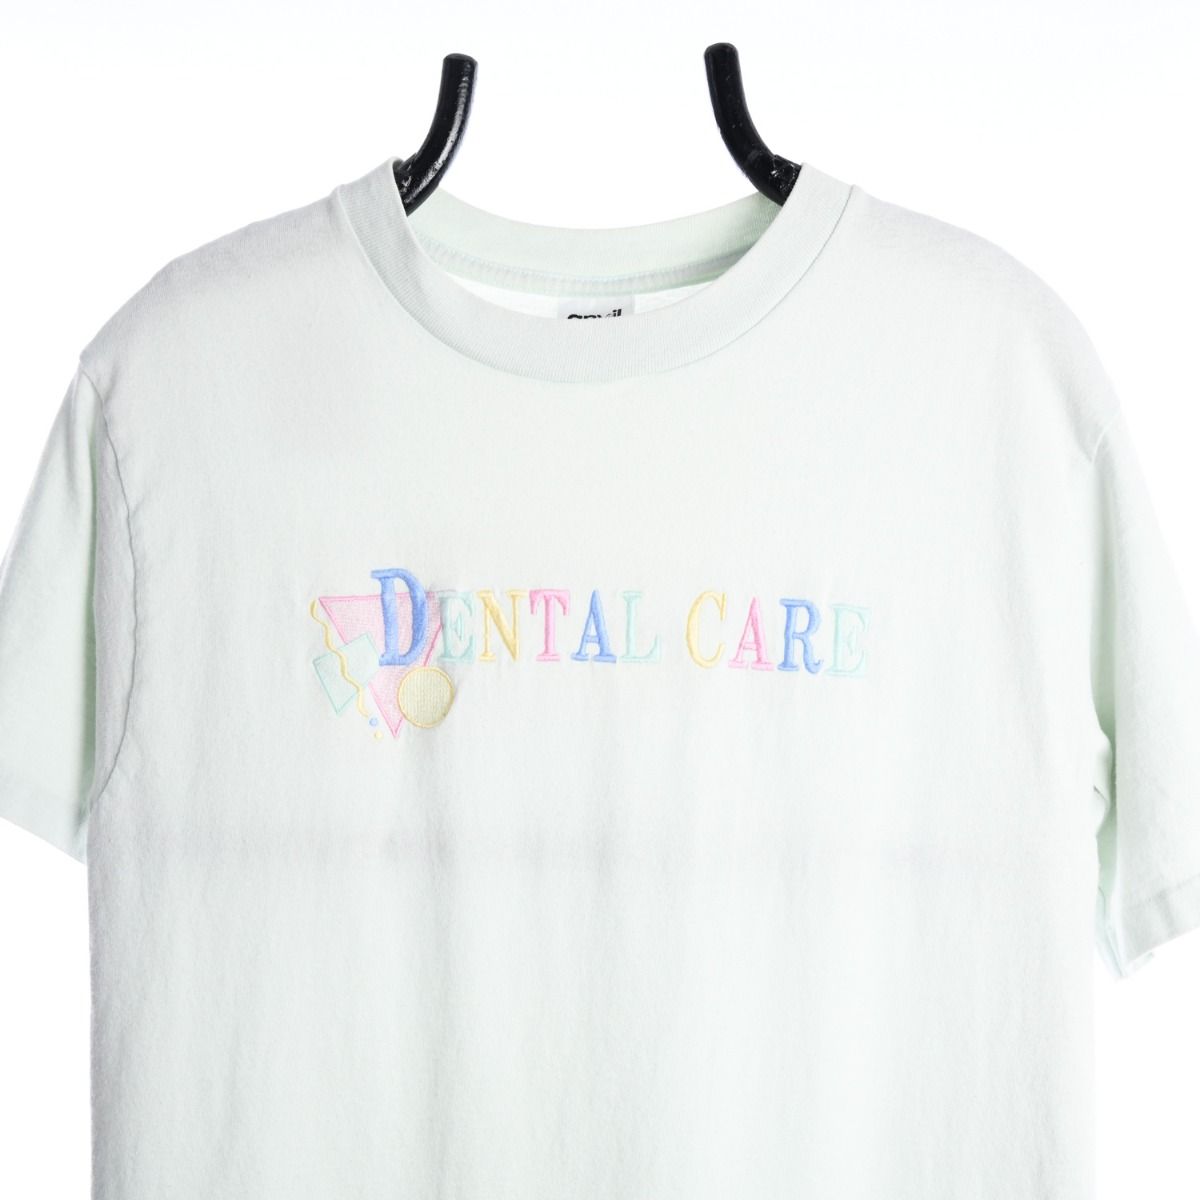 'Dental Care' 1990s T-Shirt